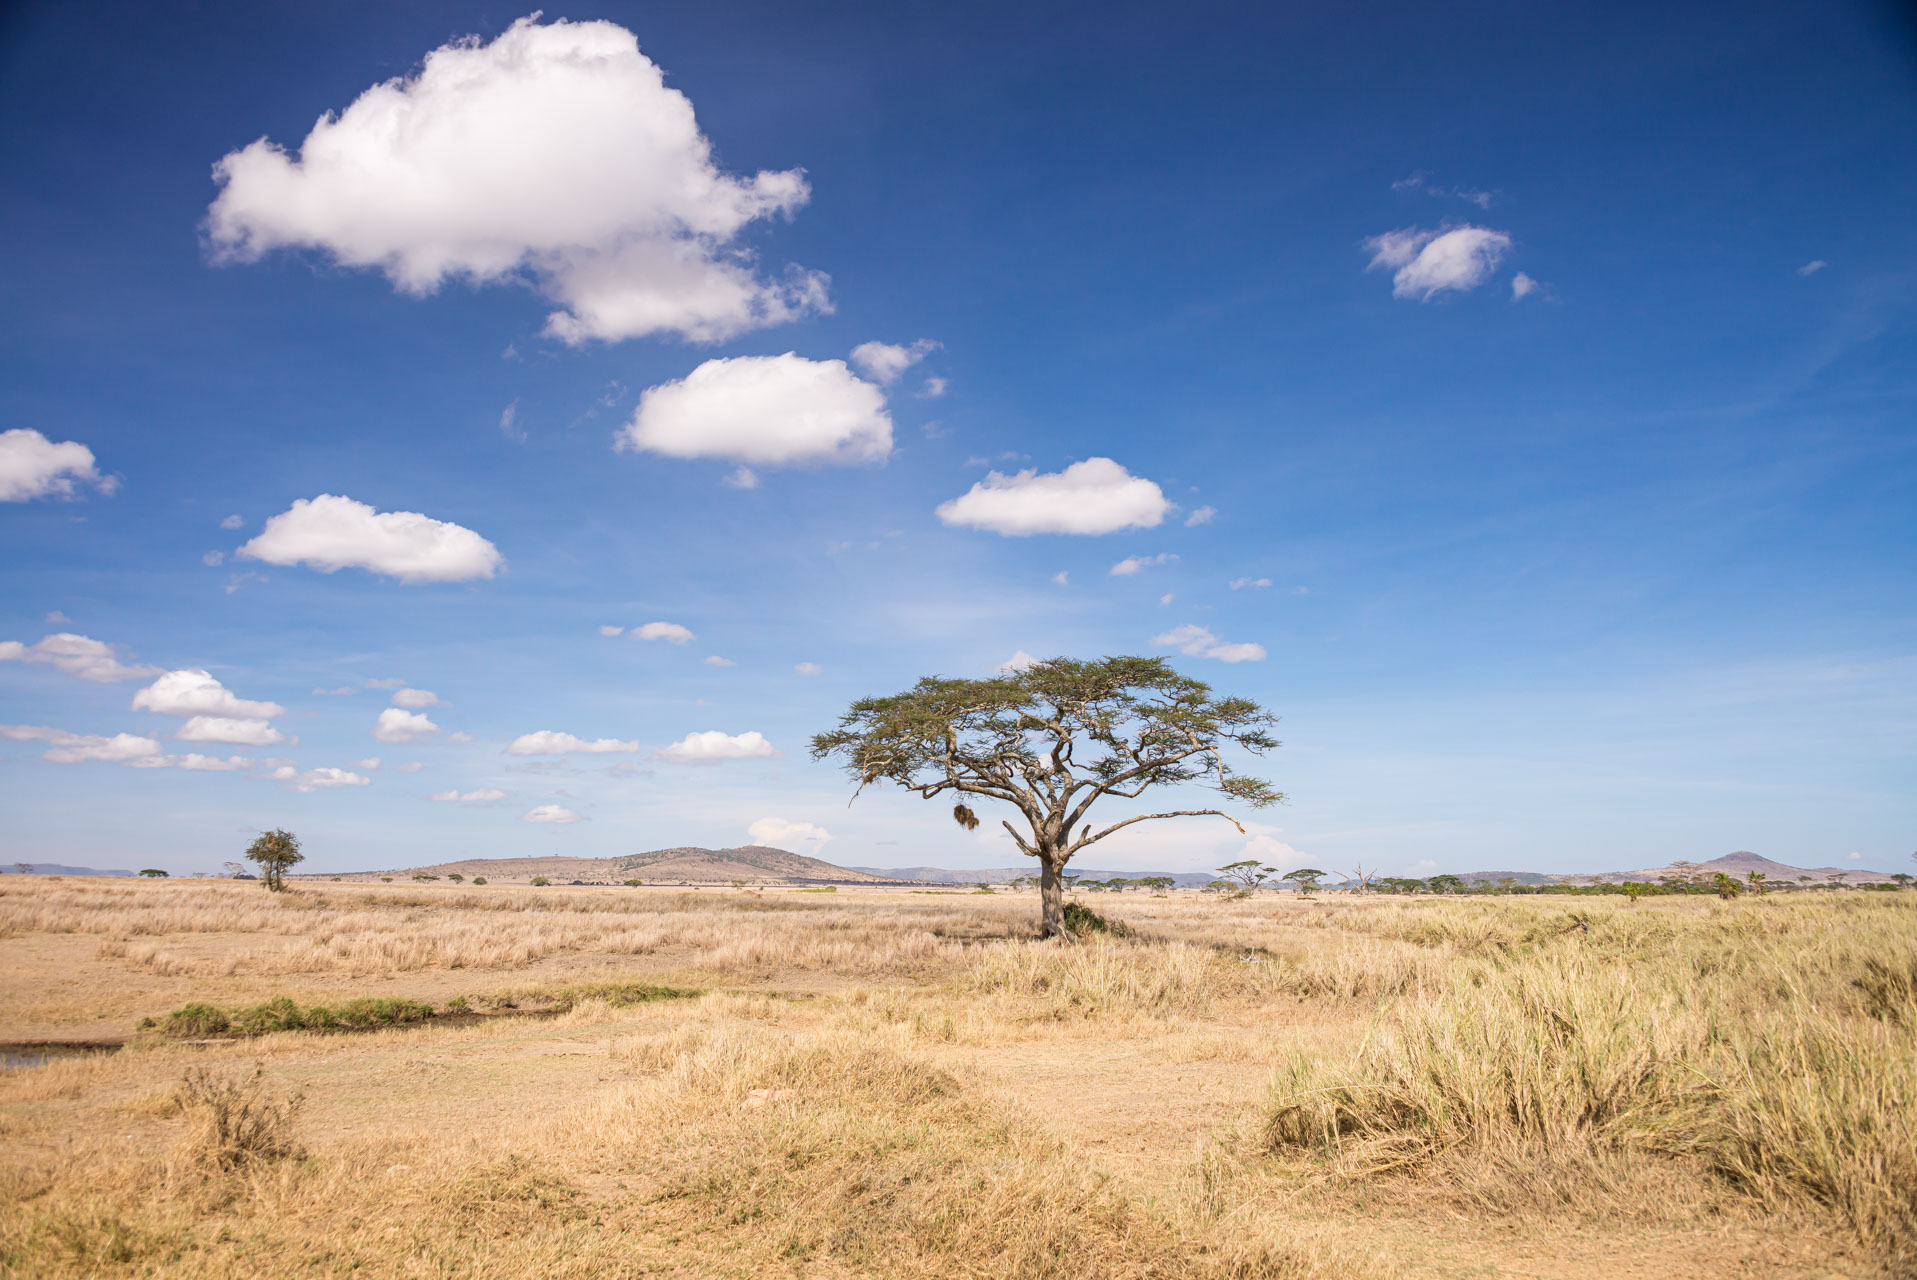 5 fakta om Serengeti – ett av världens äldsta ekosystem